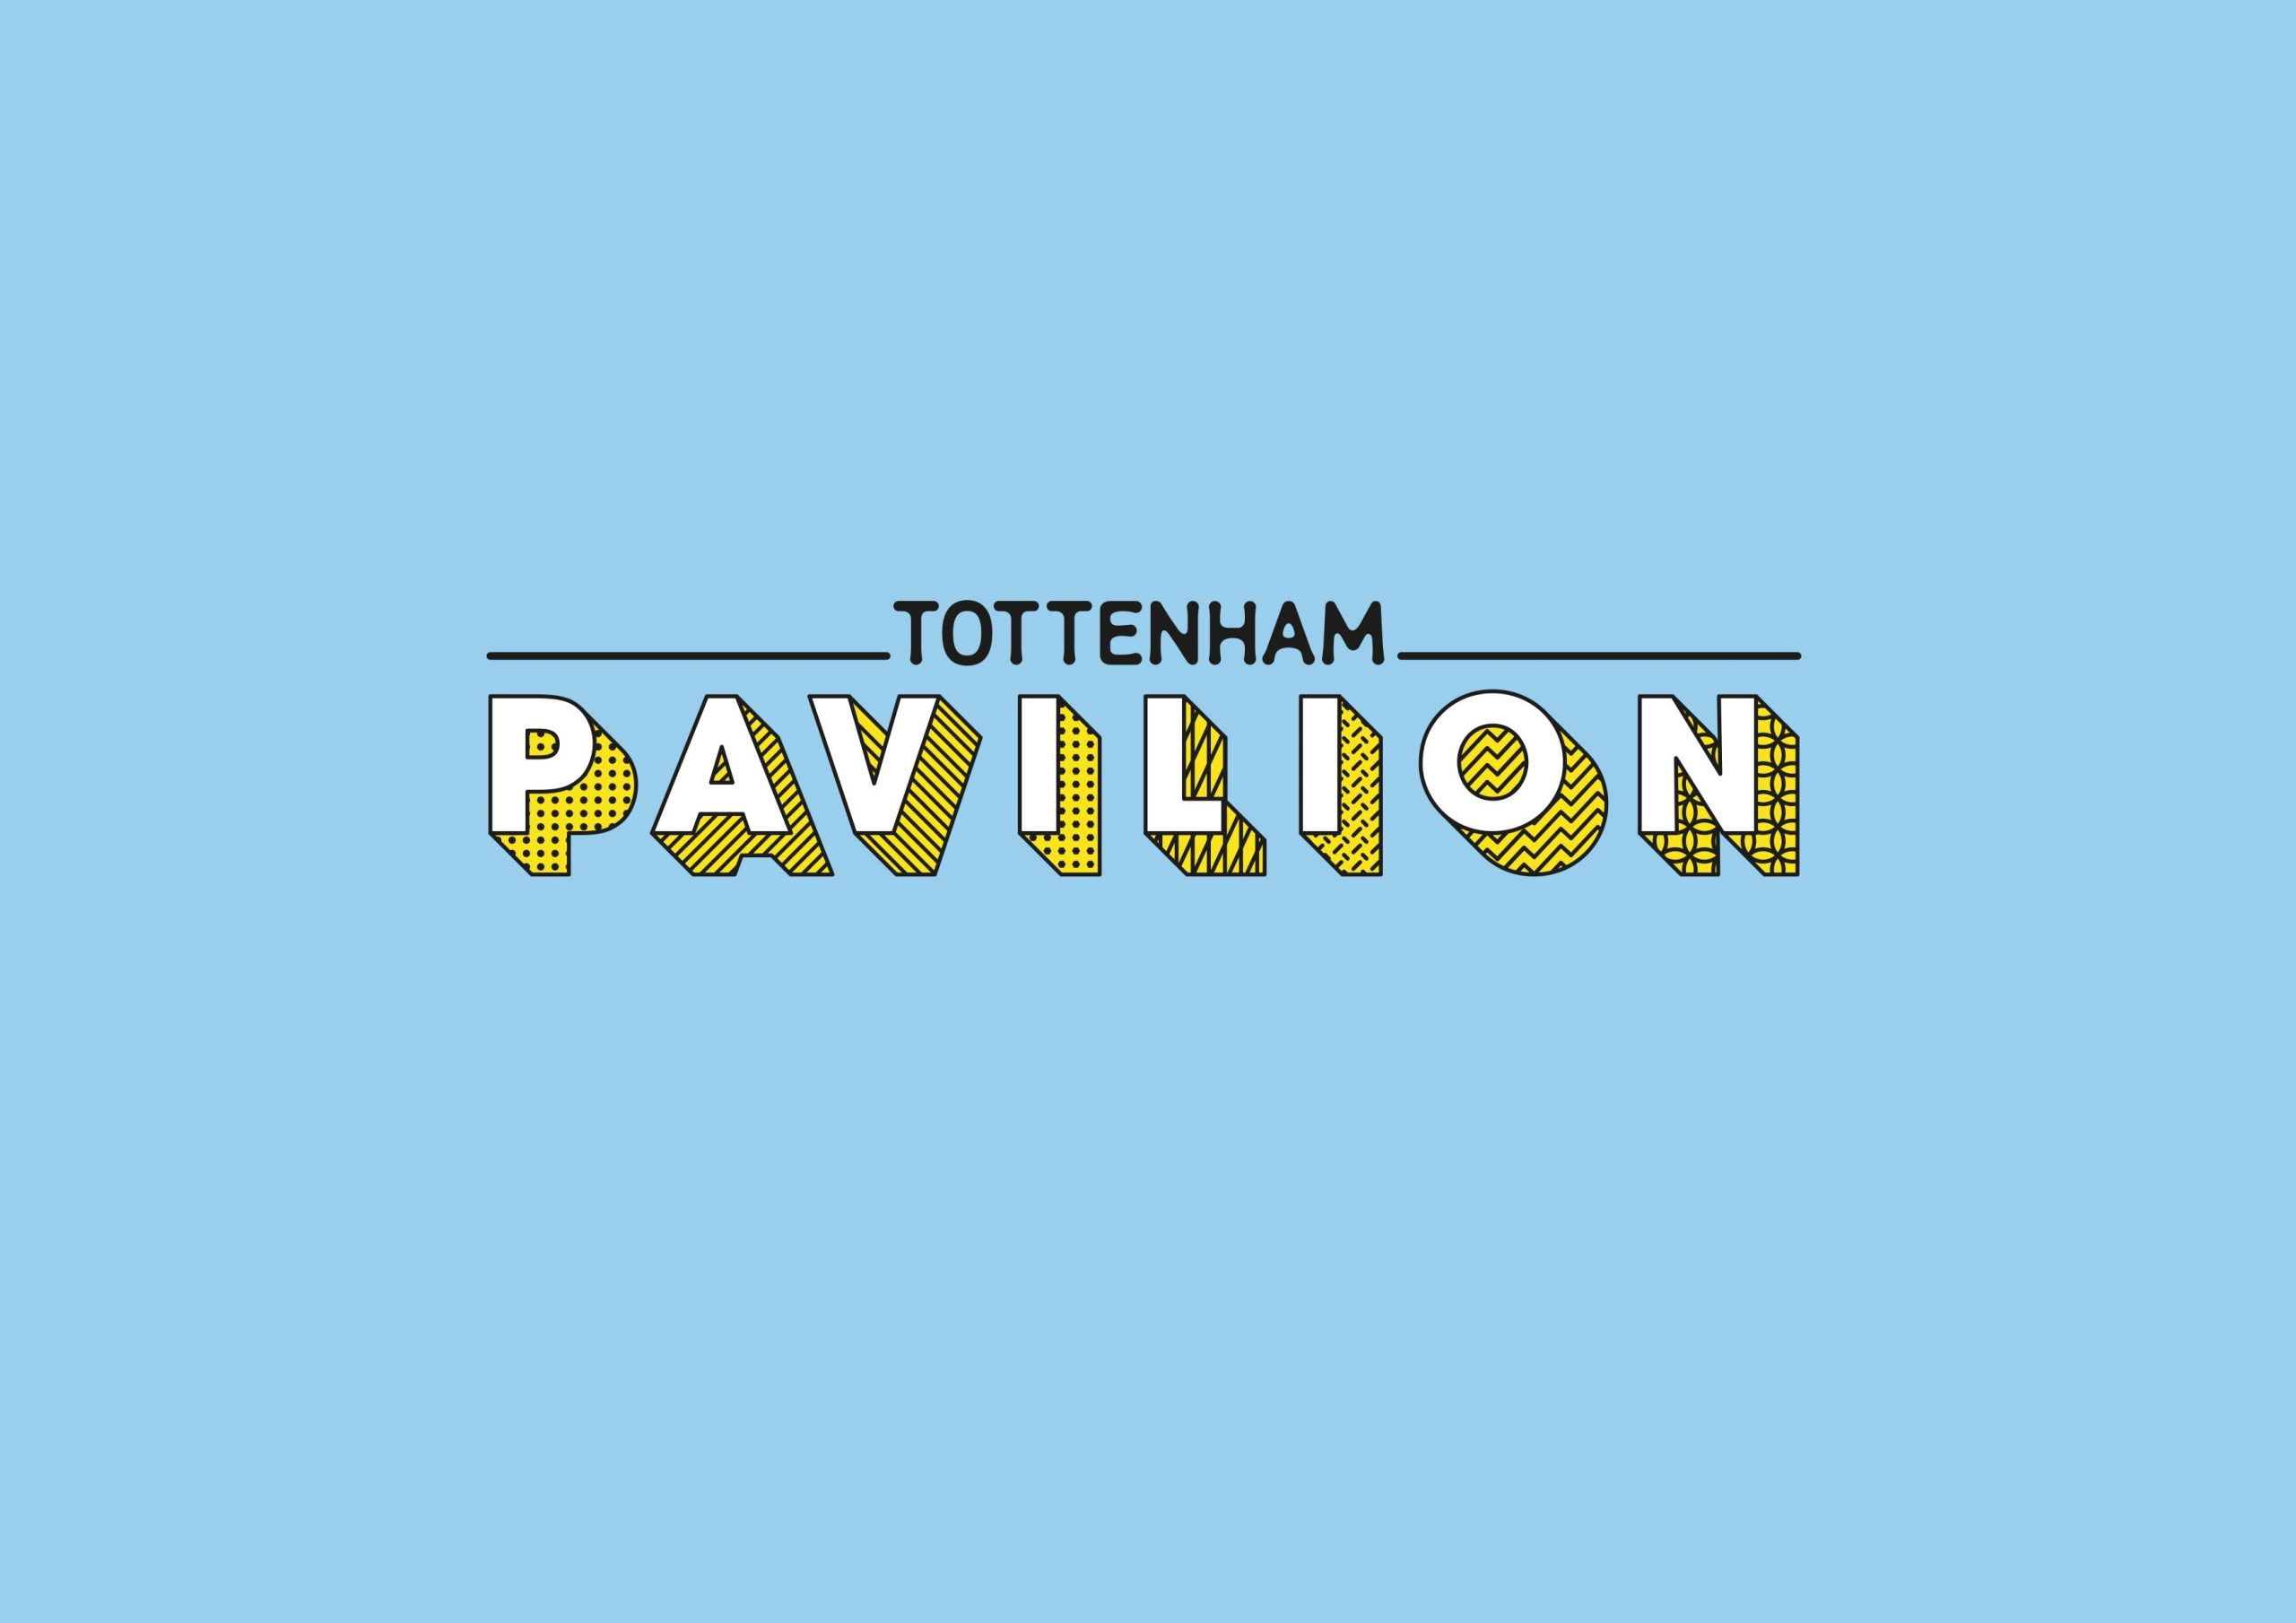 Tottenham Pavilion Competition London